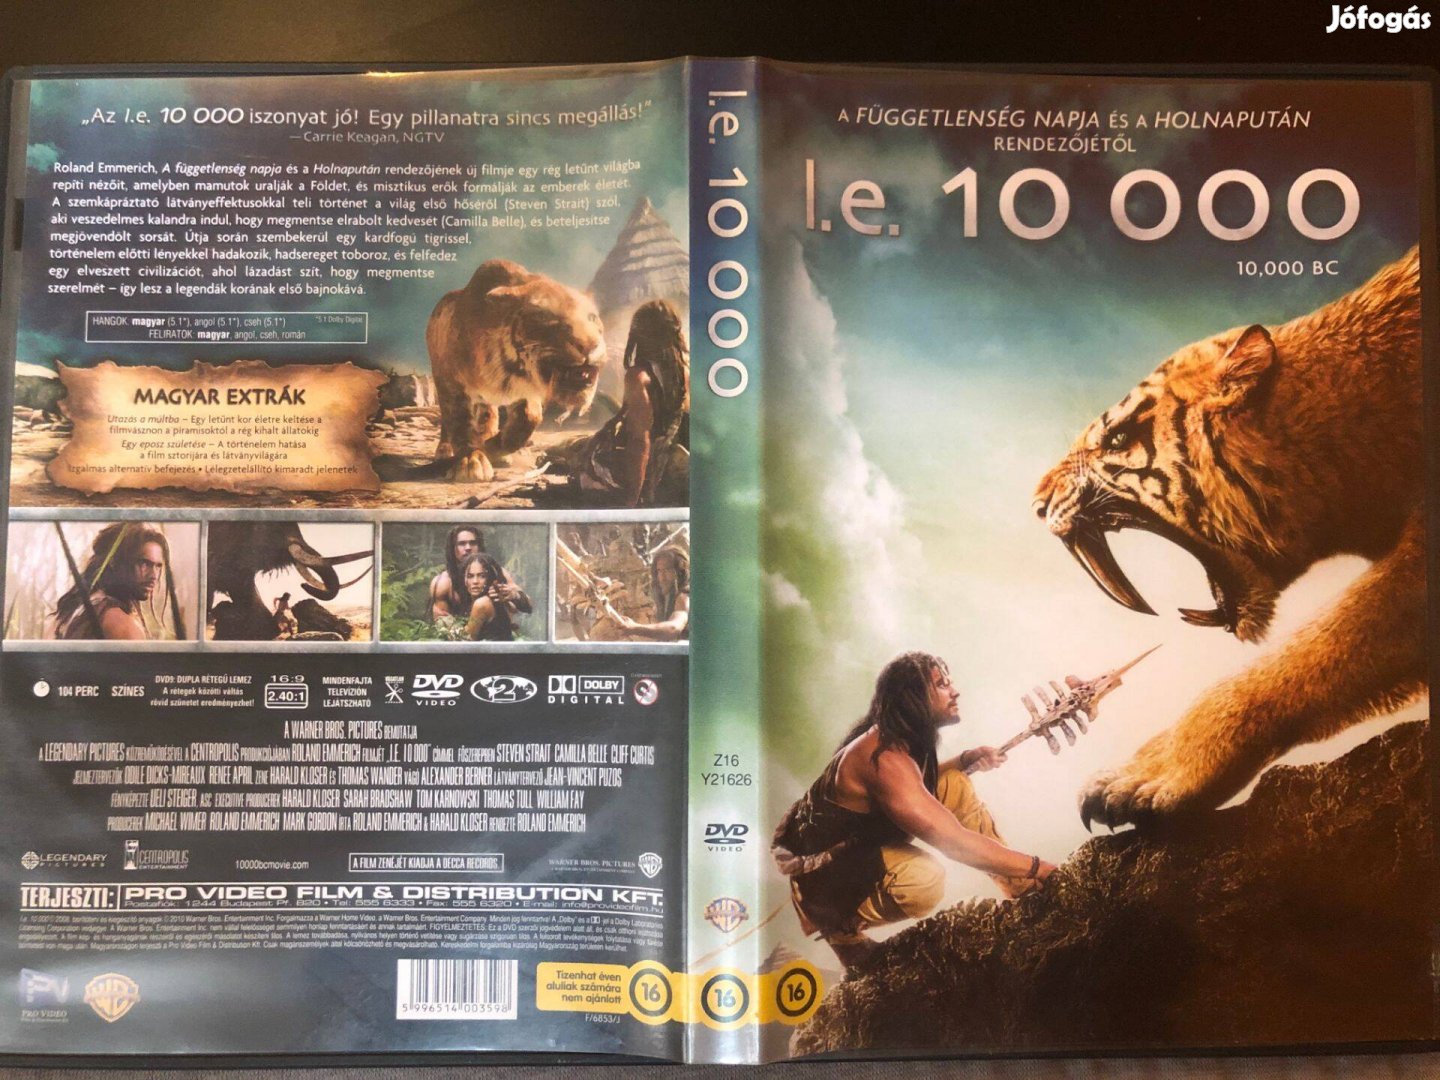 I.e. 10000 DVD (Roland Emmerich, karcmentes)